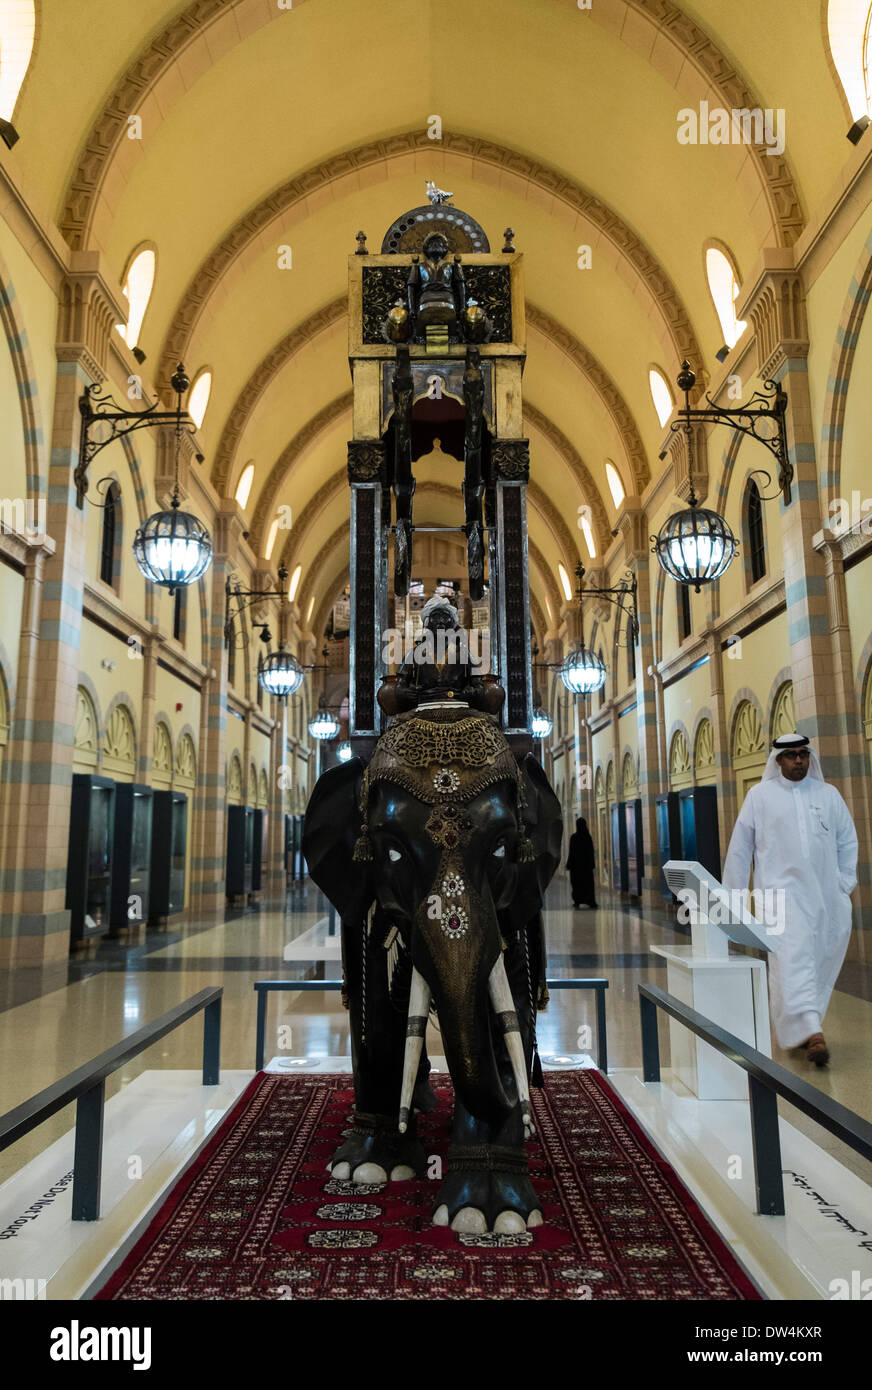 Sharjah, Museo de la civilización islámica en Sharjah, Emiratos Árabes Unidos Foto de stock